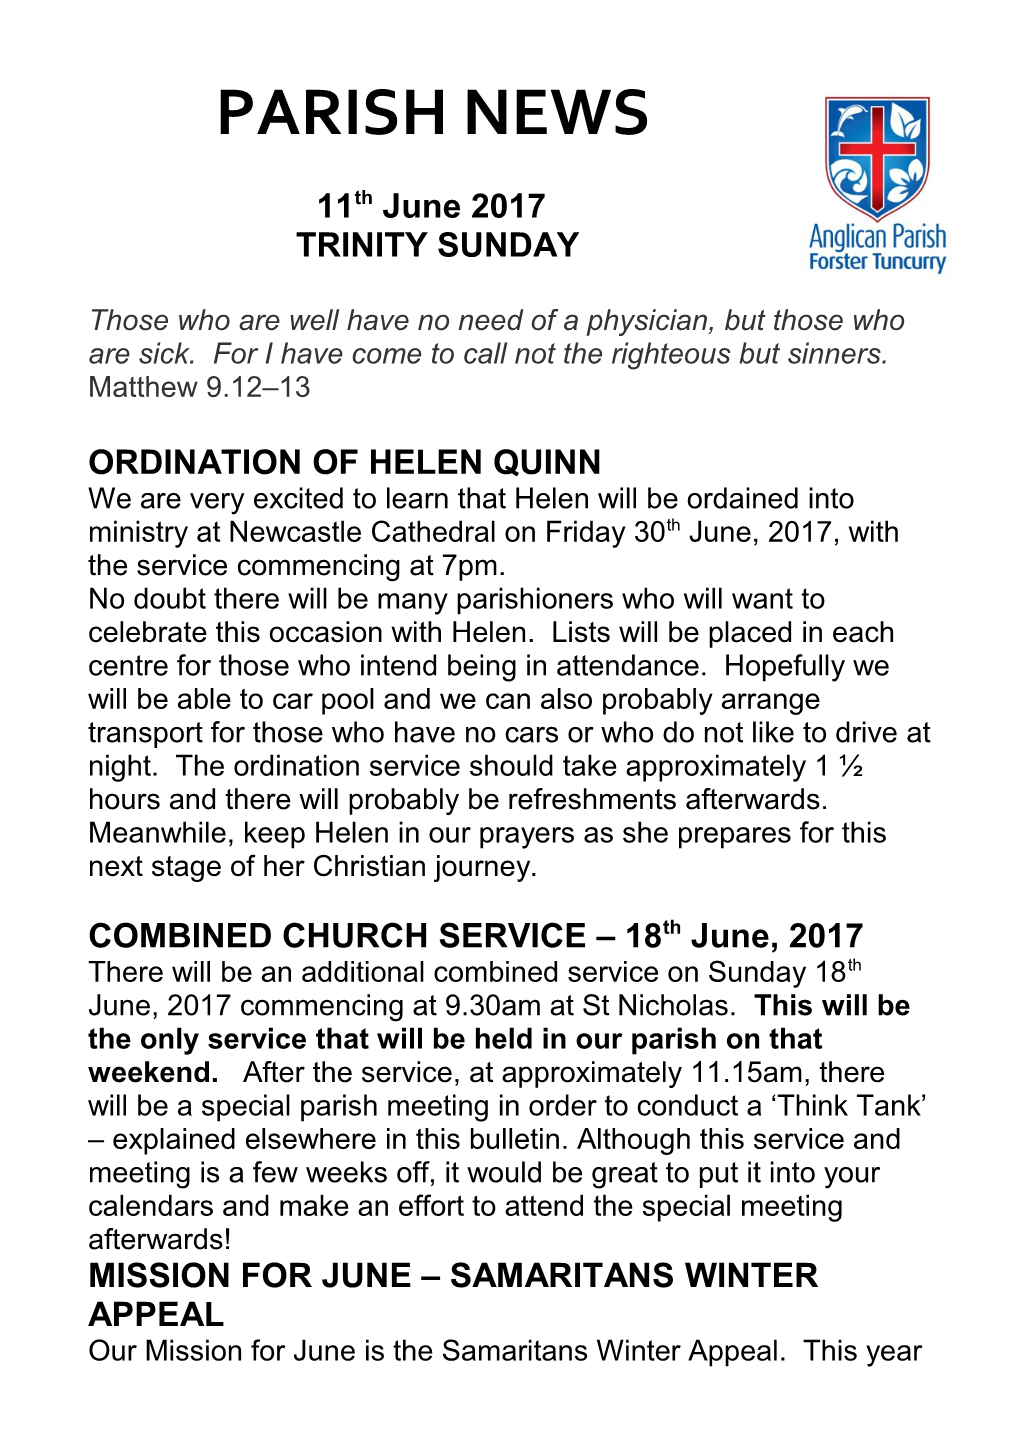 Ordination of Helen Quinn